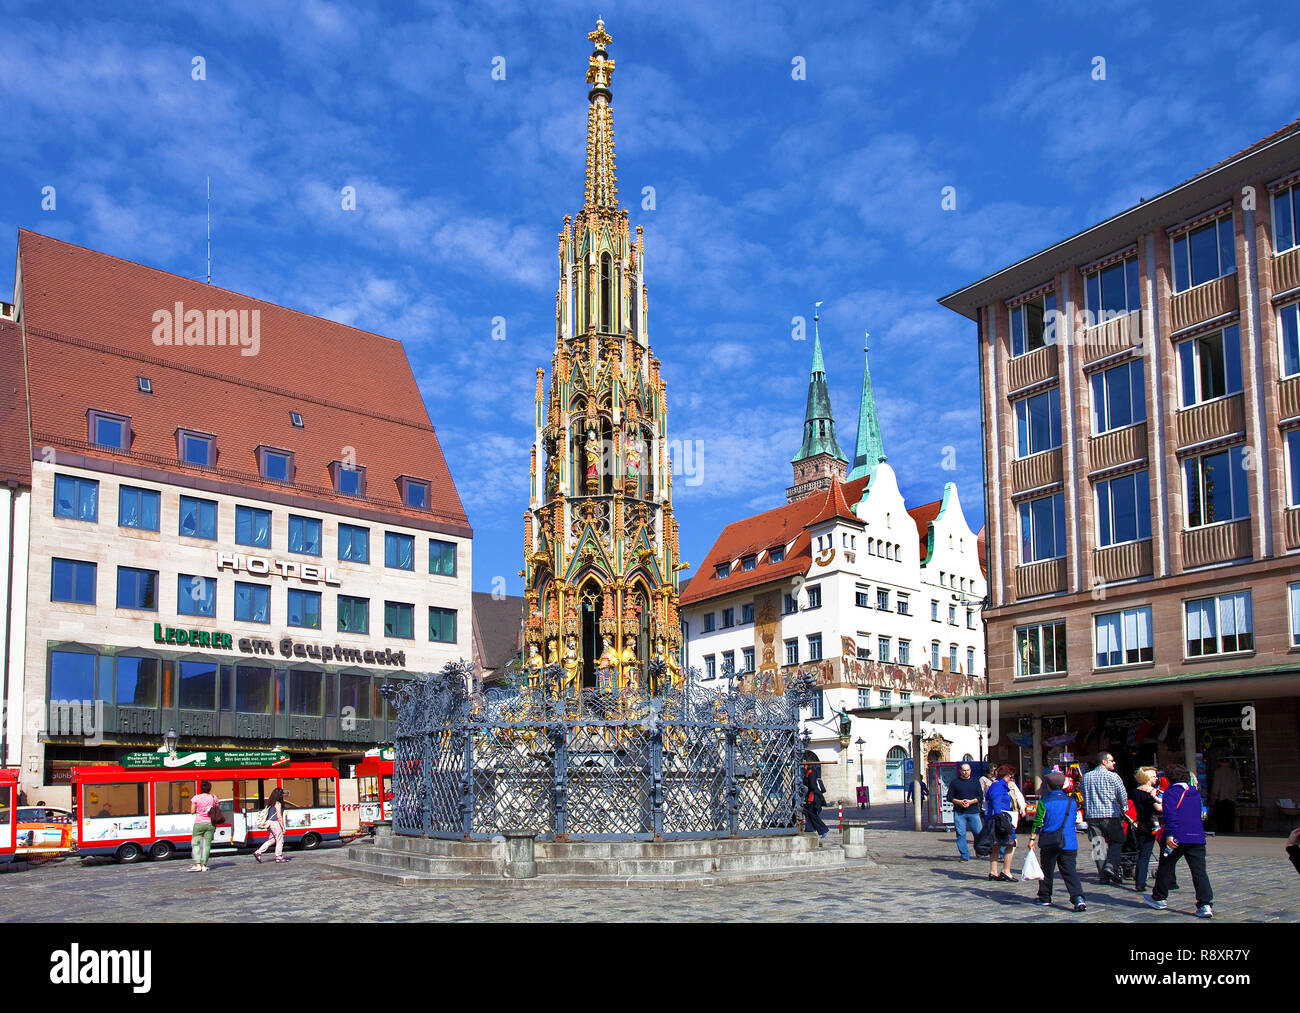 Bien beauté, Marché, market place, vieille ville, Nuremberg, Franconia, Bavaria, Germany, Europe Banque D'Images